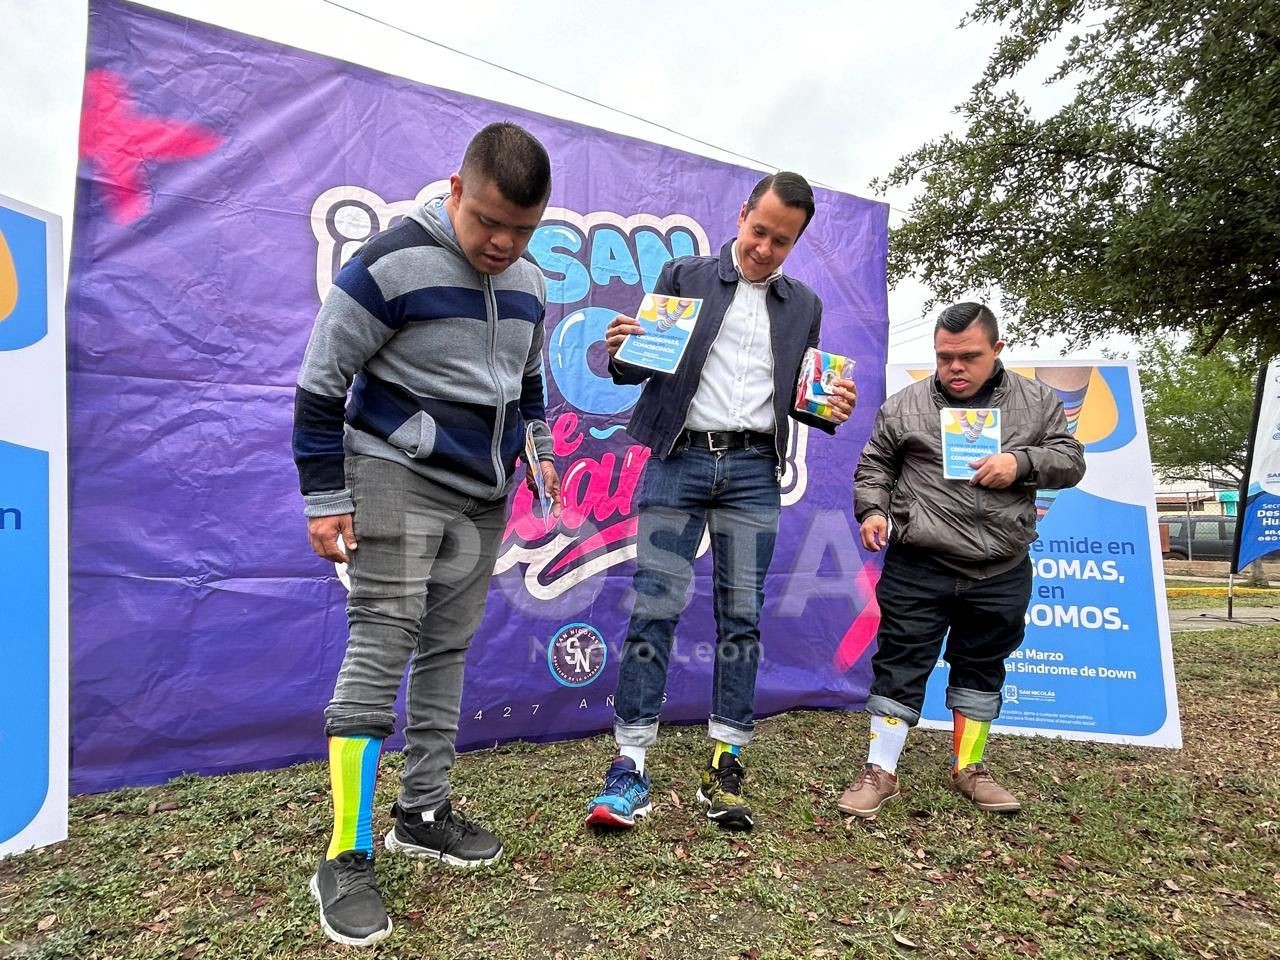 El alcalde Daniel Carrillo junto con algunos funcionarios, incluidos Manuel y Sergio traían puestos calcetas de diferentes diseños como parte de la campaña “La vida no se mide en cromosomas, sino, en comosomos”. Foto: Rosy Sandoval